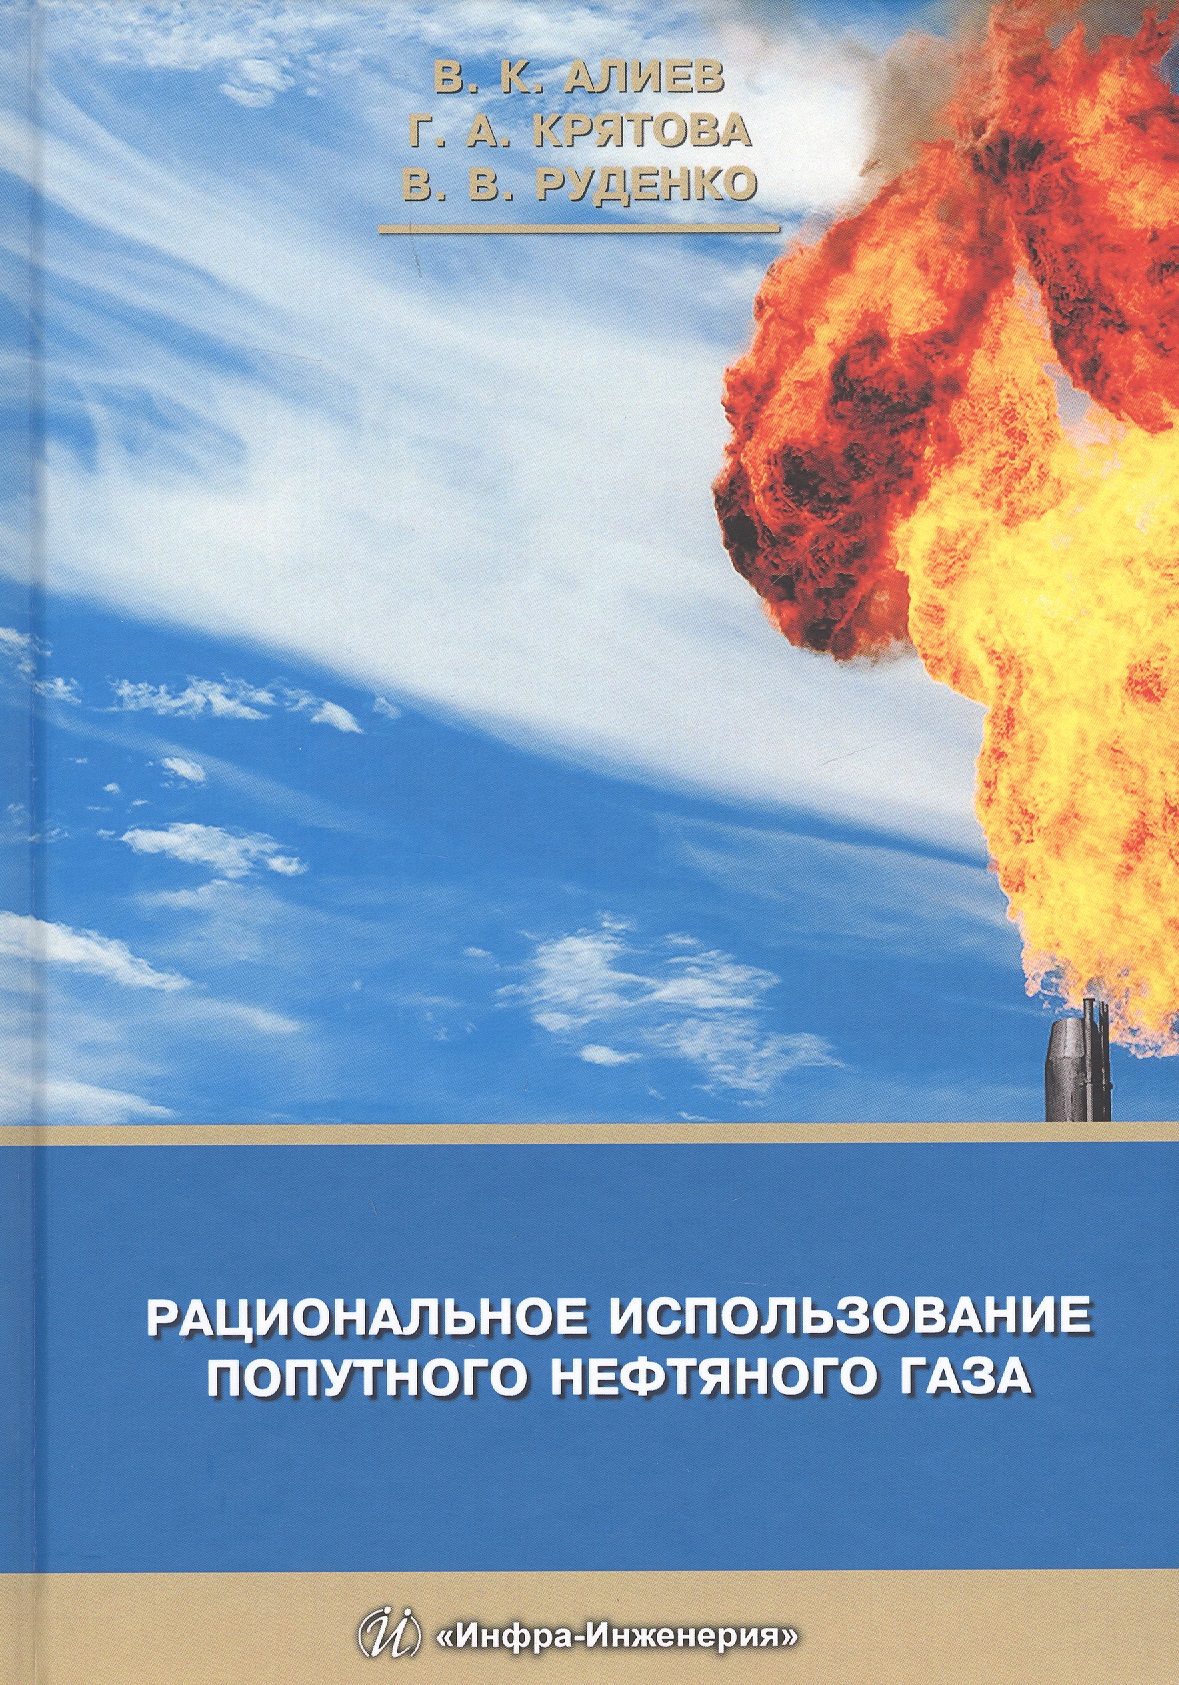 Рациональное использование попутного нефтяного газа (Крятова)